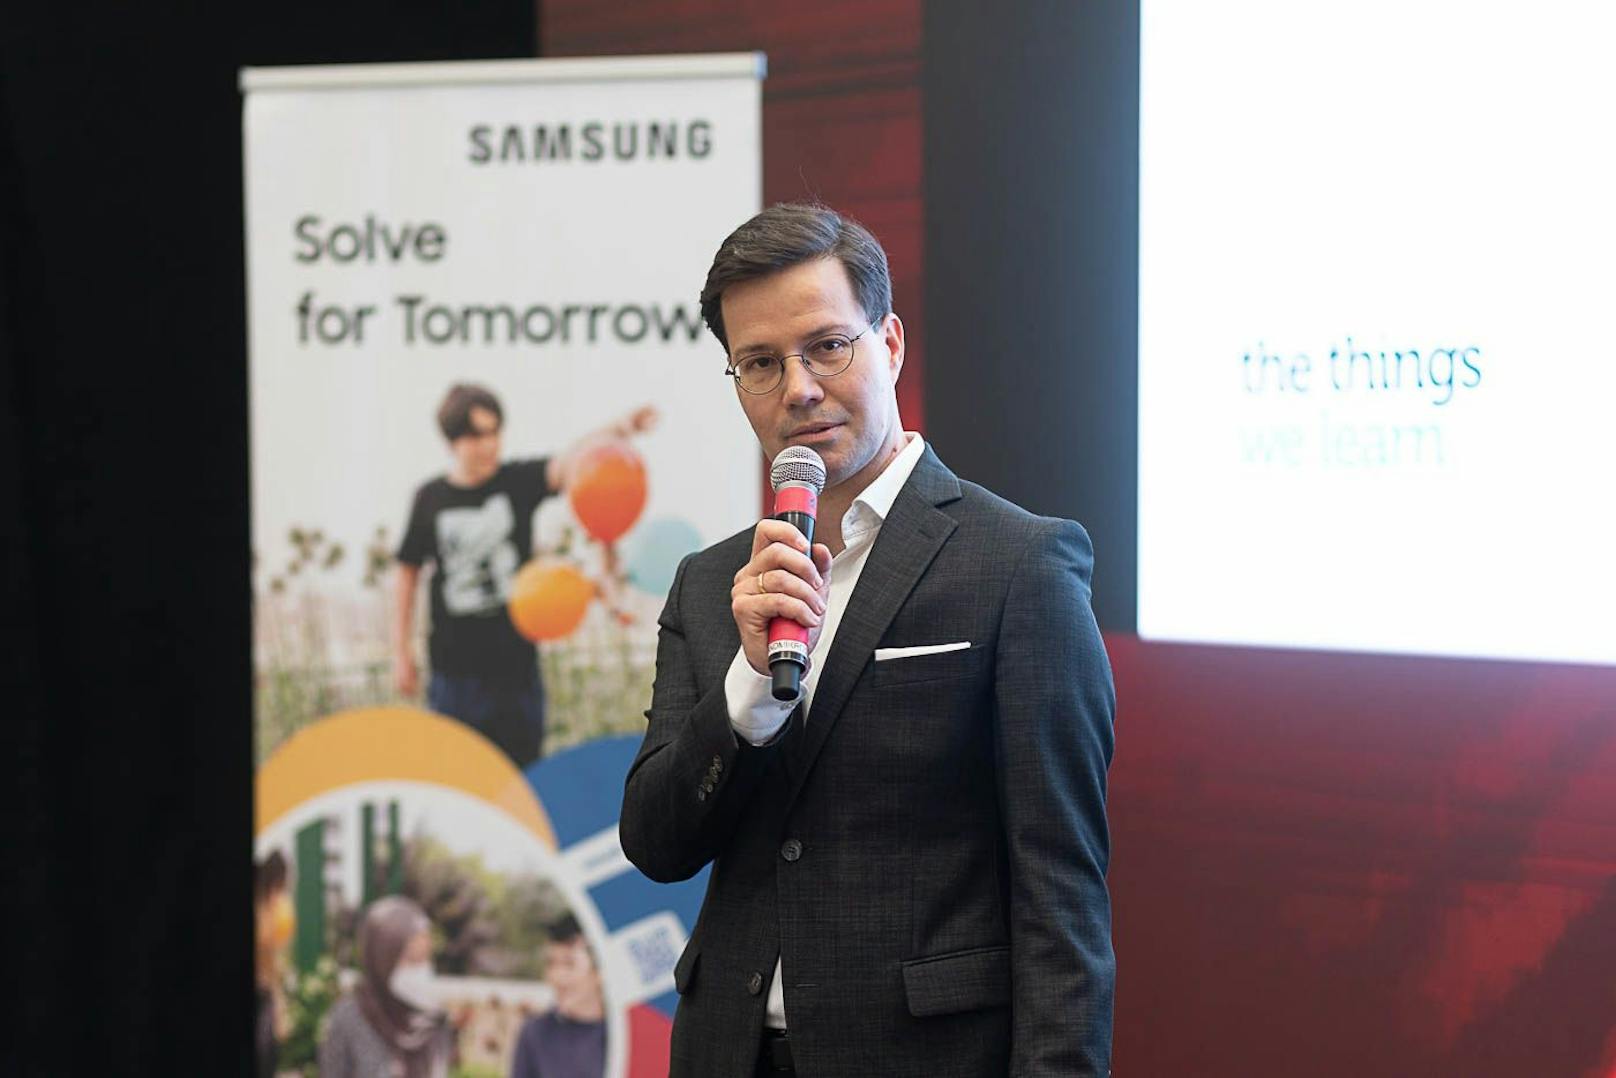 "Unser Bildungsprogramm zielt darauf ab, dass die jungen Talente von heute die Chance haben, die Pionierinnen und Pioniere von morgen zu werden", so Marvin Peters, Director Mobile bei Samsung Österreich.